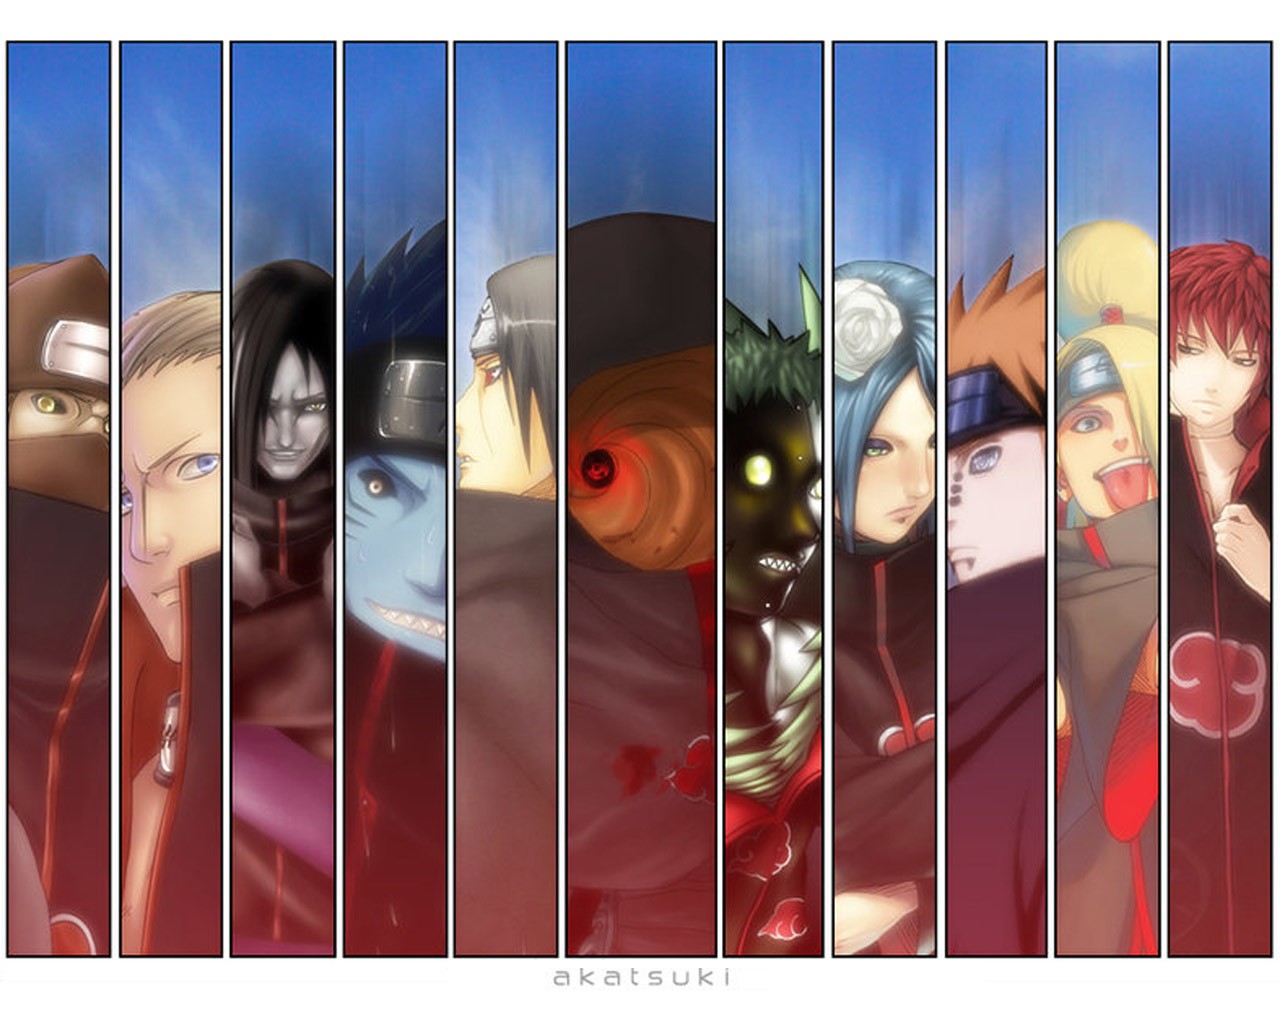 Anime 1280x1024 panels Kakuzu Hidan Orochimaru Hoshigaki Kisame Uchiha Itachi Tobi Zetsu Konan (naruto) Pein Deidara Sasori anime collage Akatsuki (Naruto Shippuuden)